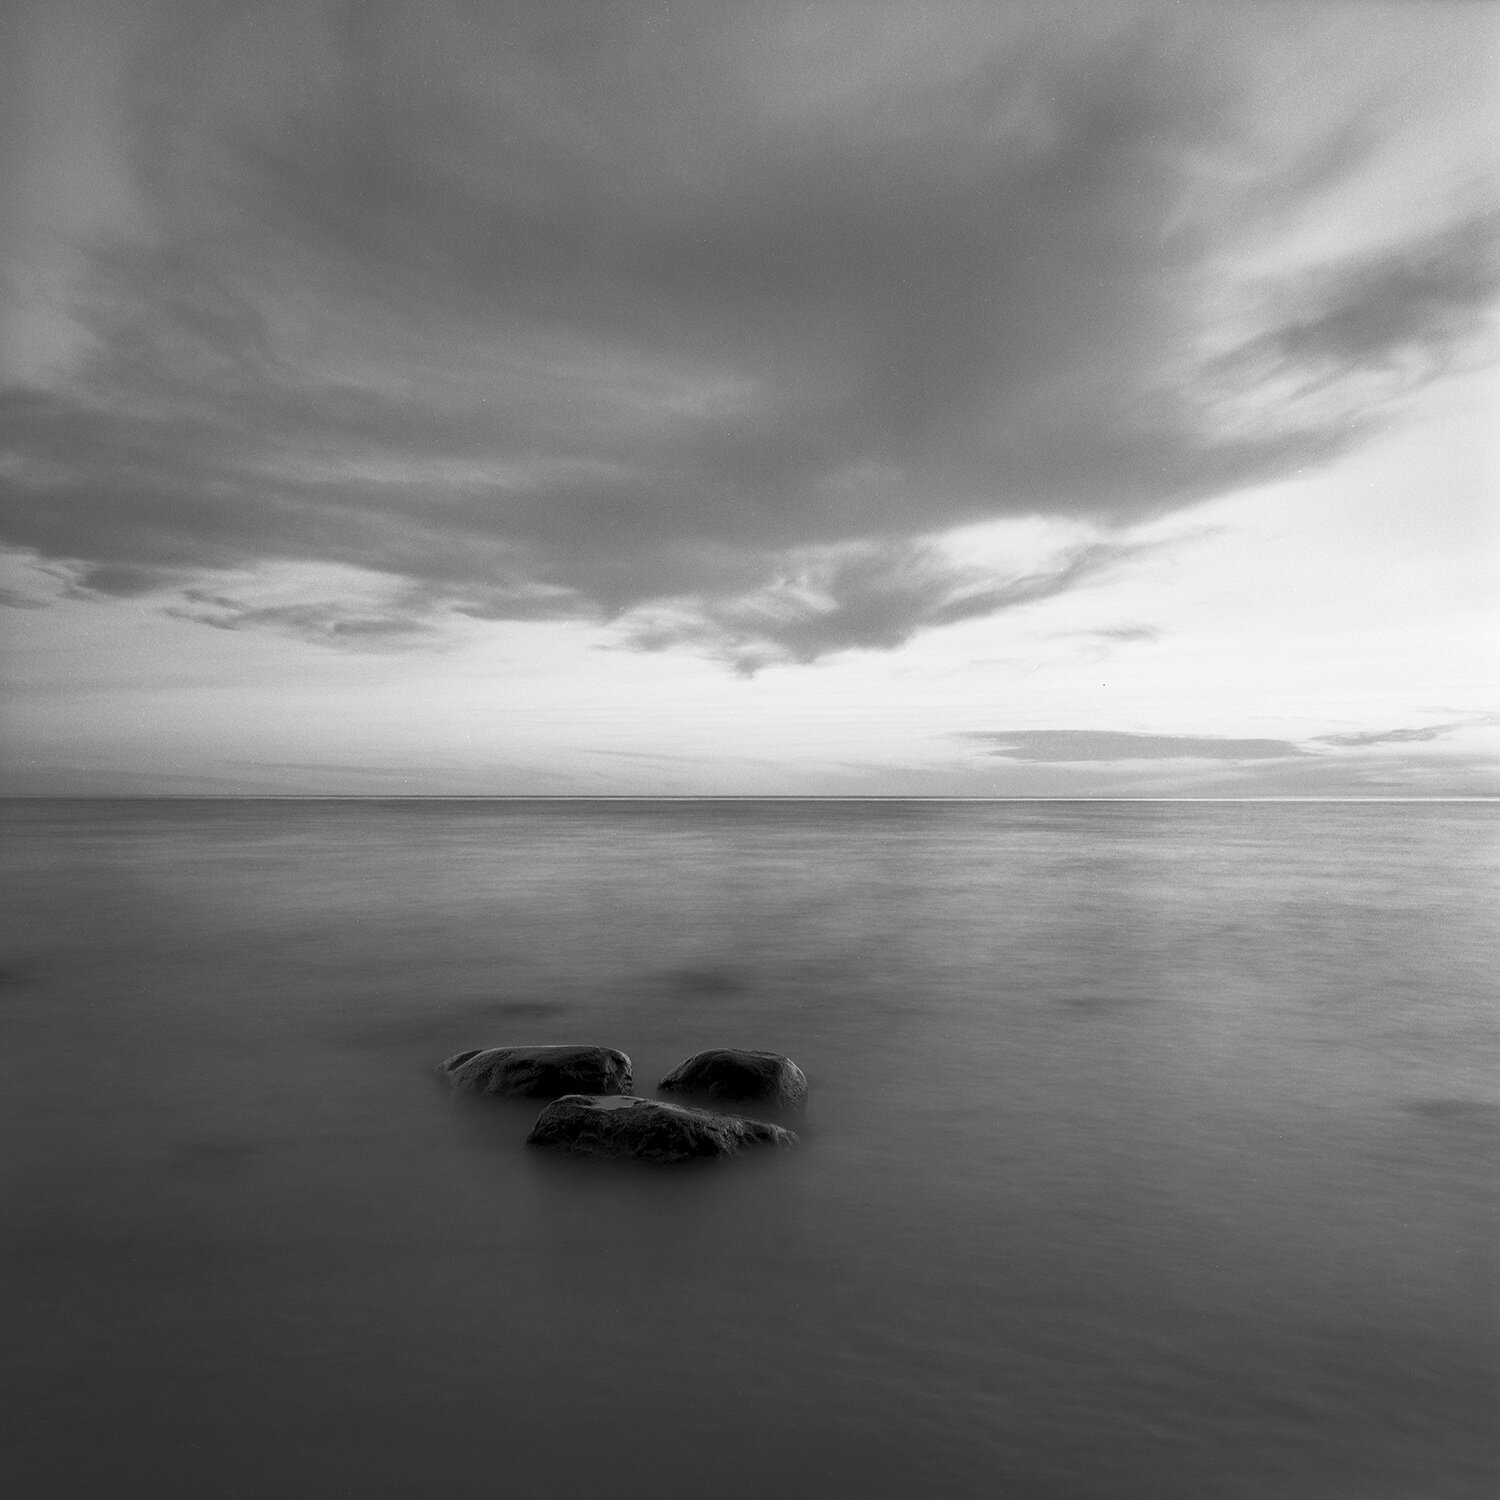 Three Rocks - Sturgeon Bay, Mi.